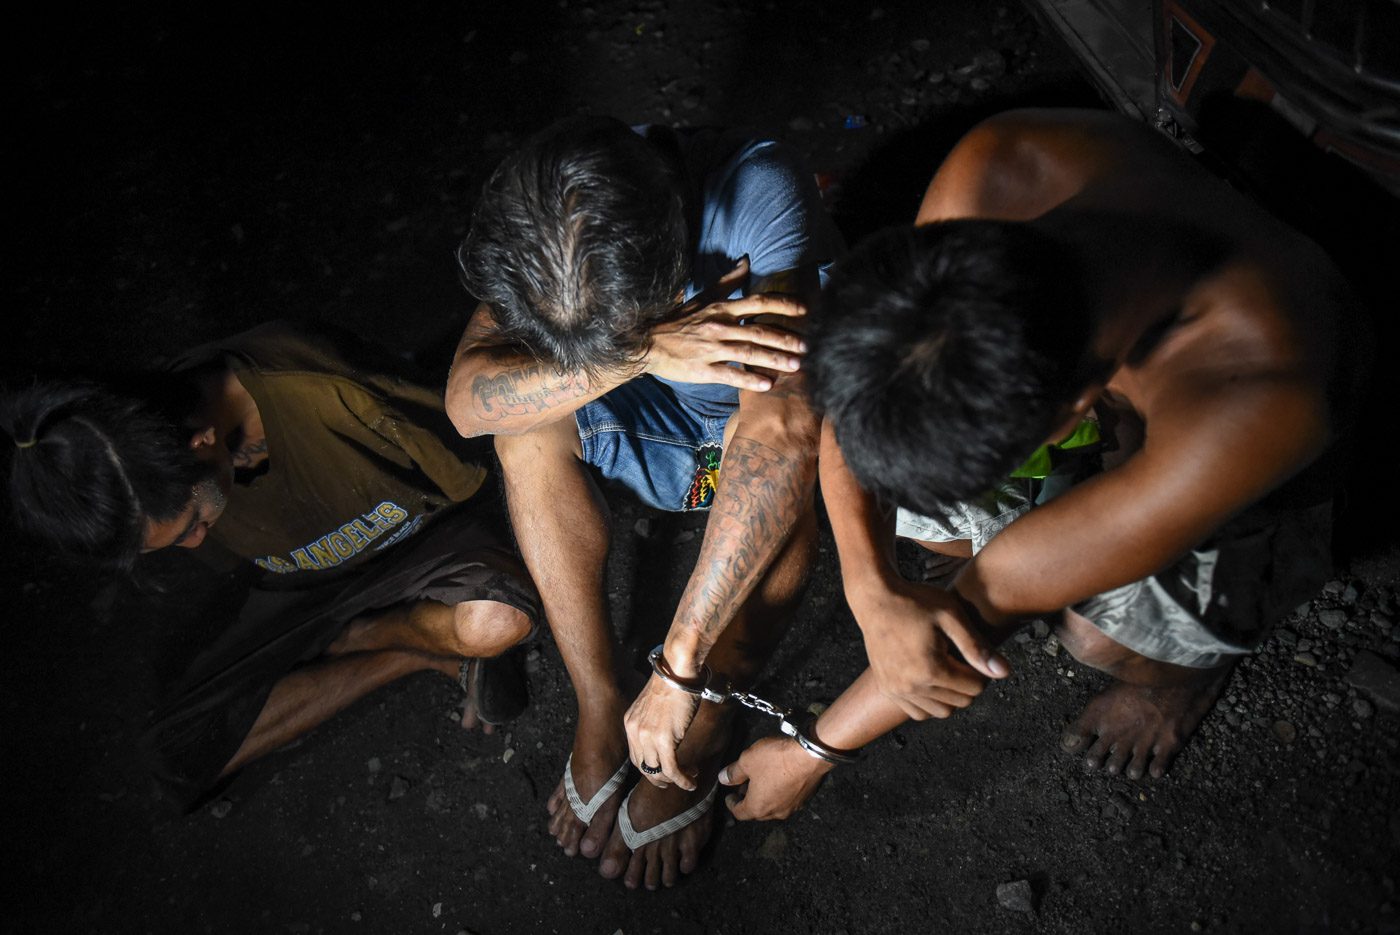 ‘Walang nanlaban’: None killed in Makati drug raid